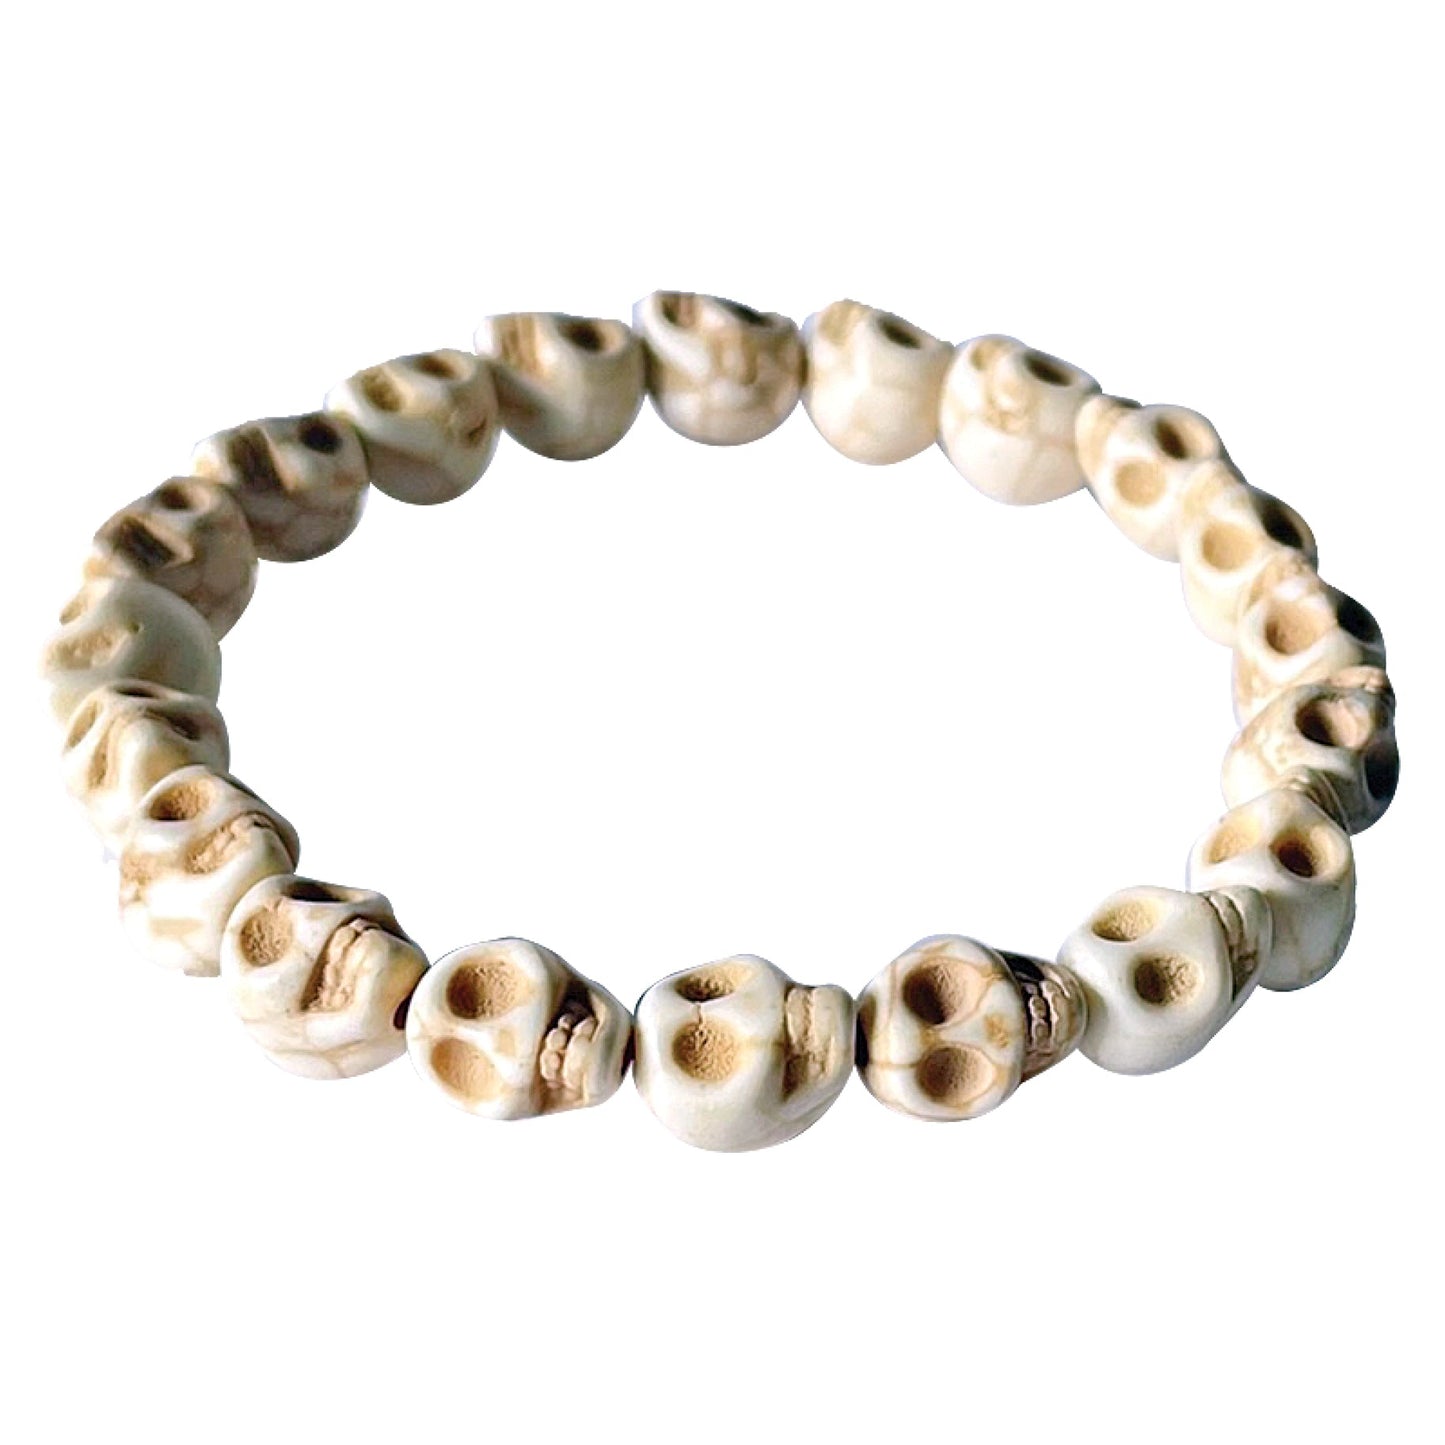 Bone Skull Bracelet Medium Size Beads